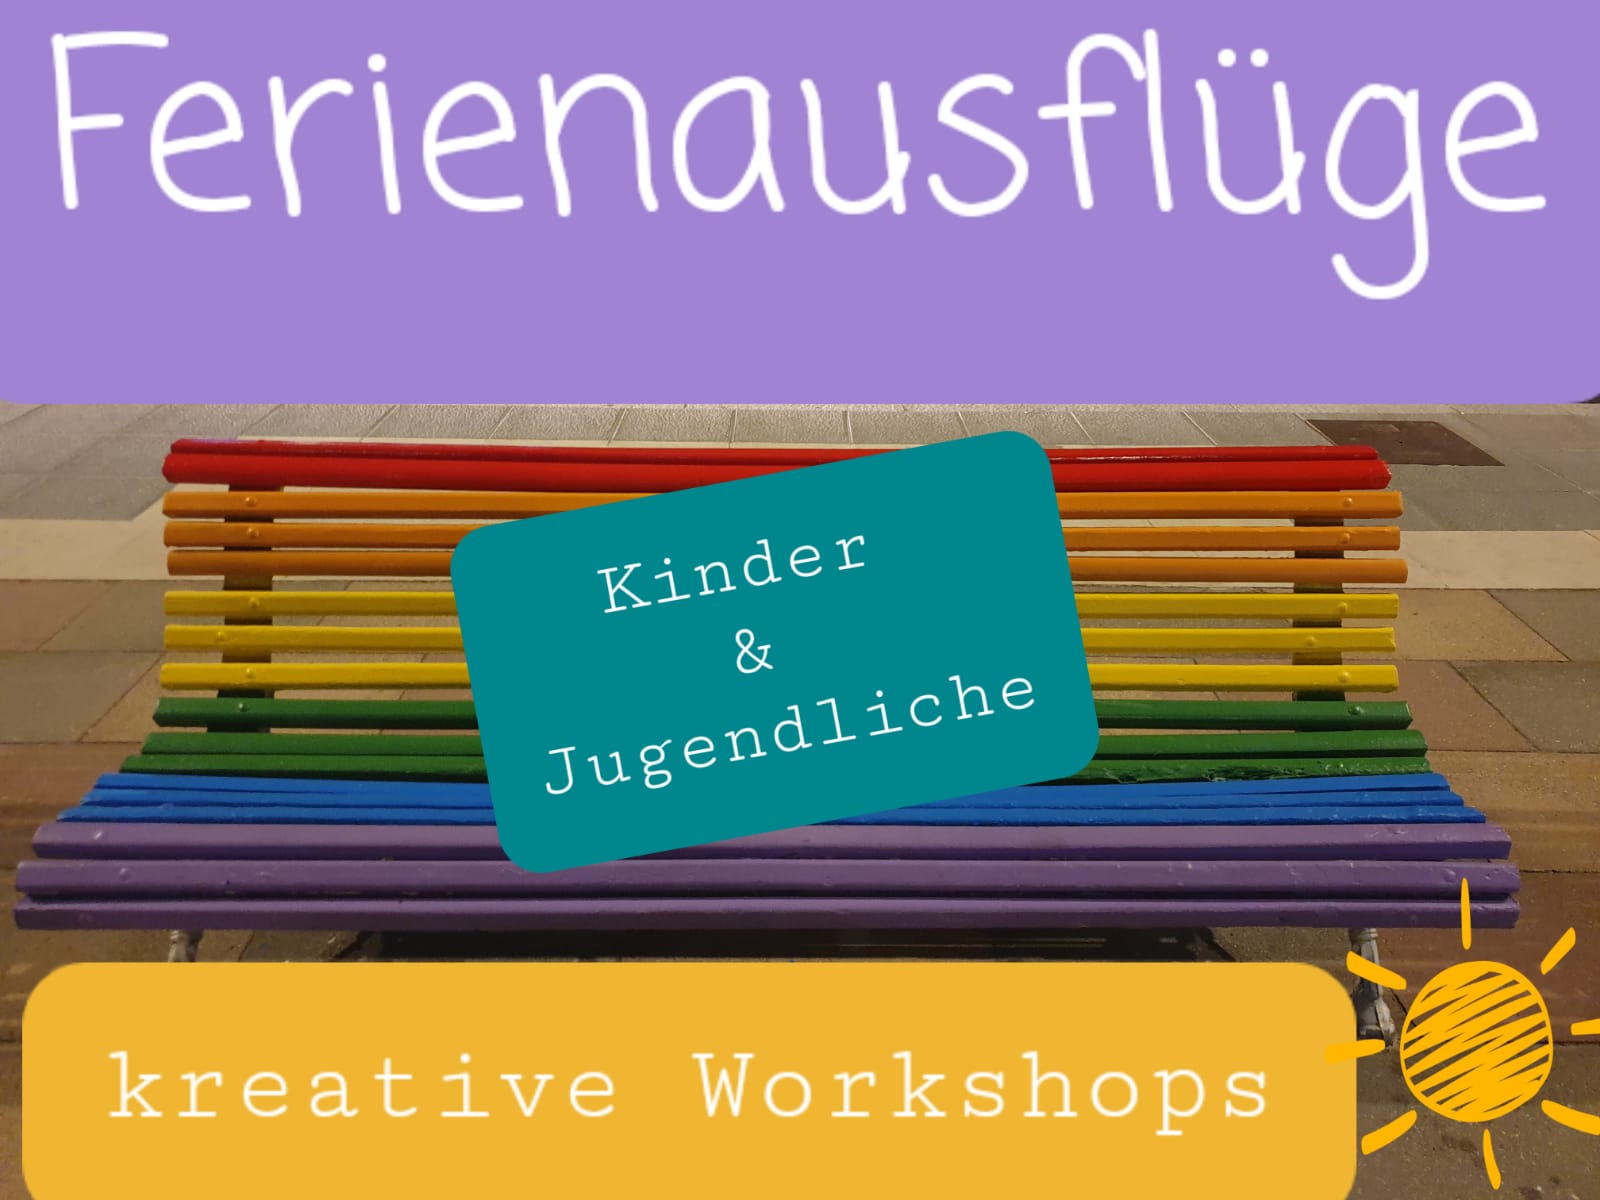 Ferienausflüge und kreative Workshops mit Kindern und Jugendlichen